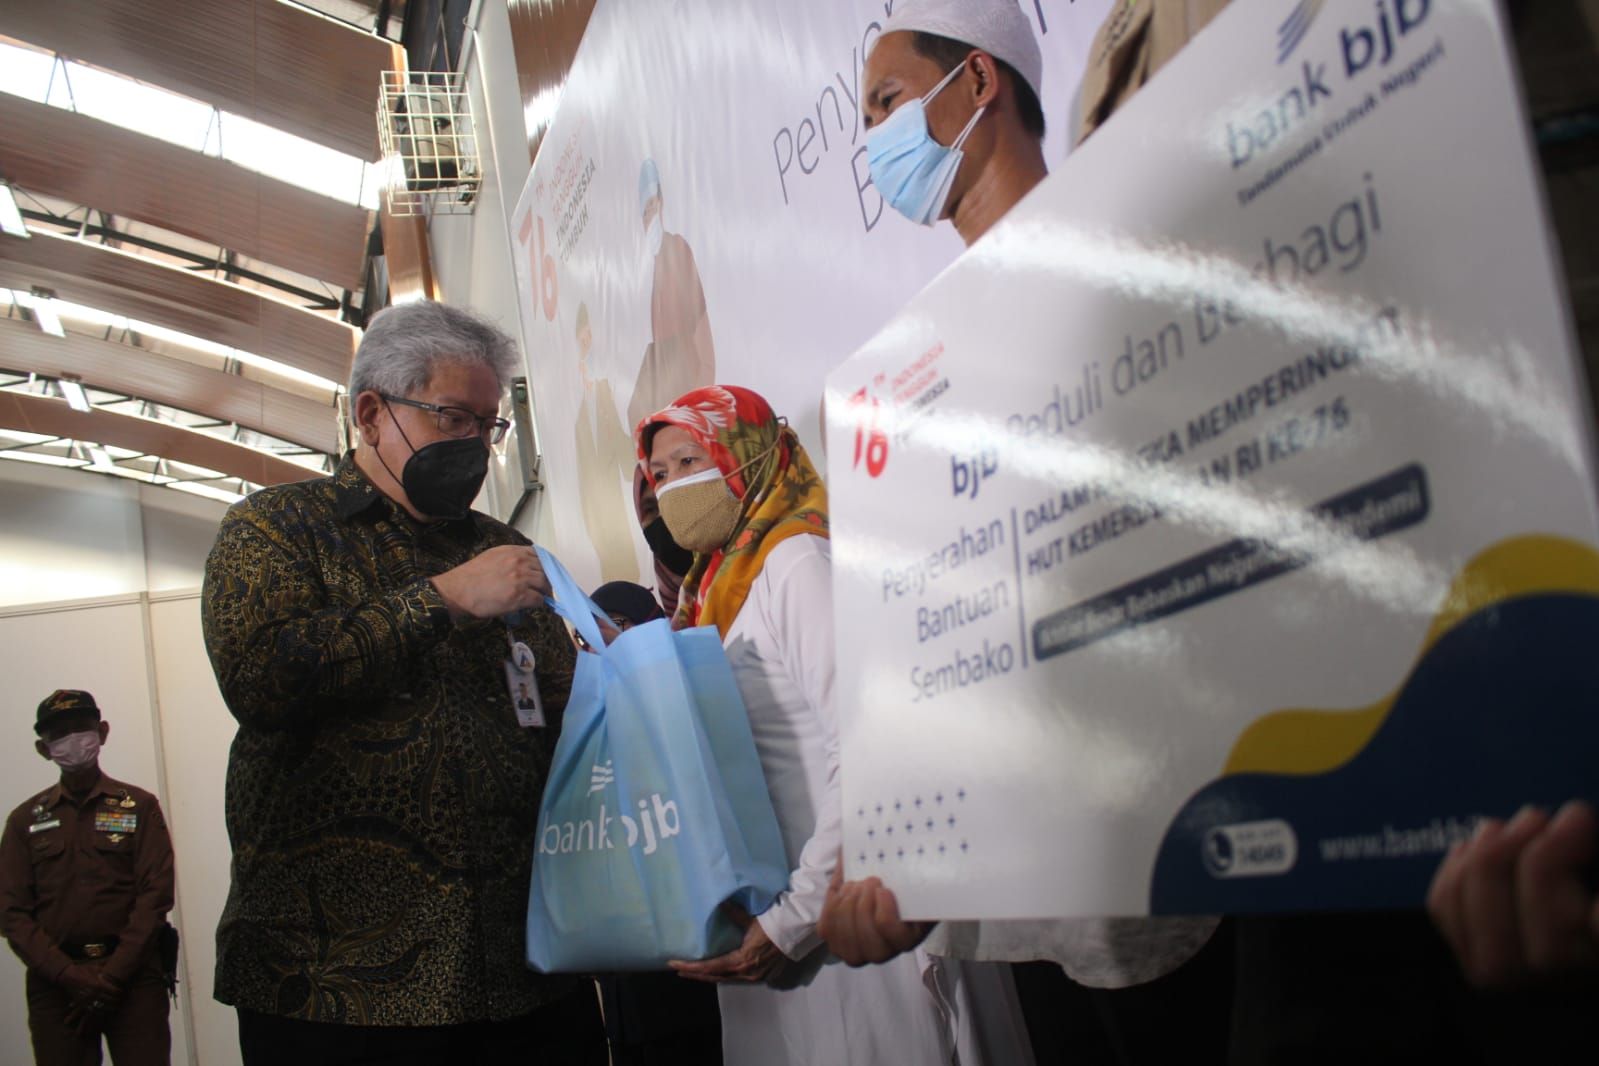 Direktur Utama Bank Bjb Yuddy Renaldy secara simbolis menyerahkan bantuan sosial dan paket sembako kepada warga terdampak COVID-19 pada kegiatan perayaan HUT RI ke-76, di GOR bank bjb, Jln. Naripan, Kota Bandung, Senin (16/8/2021).